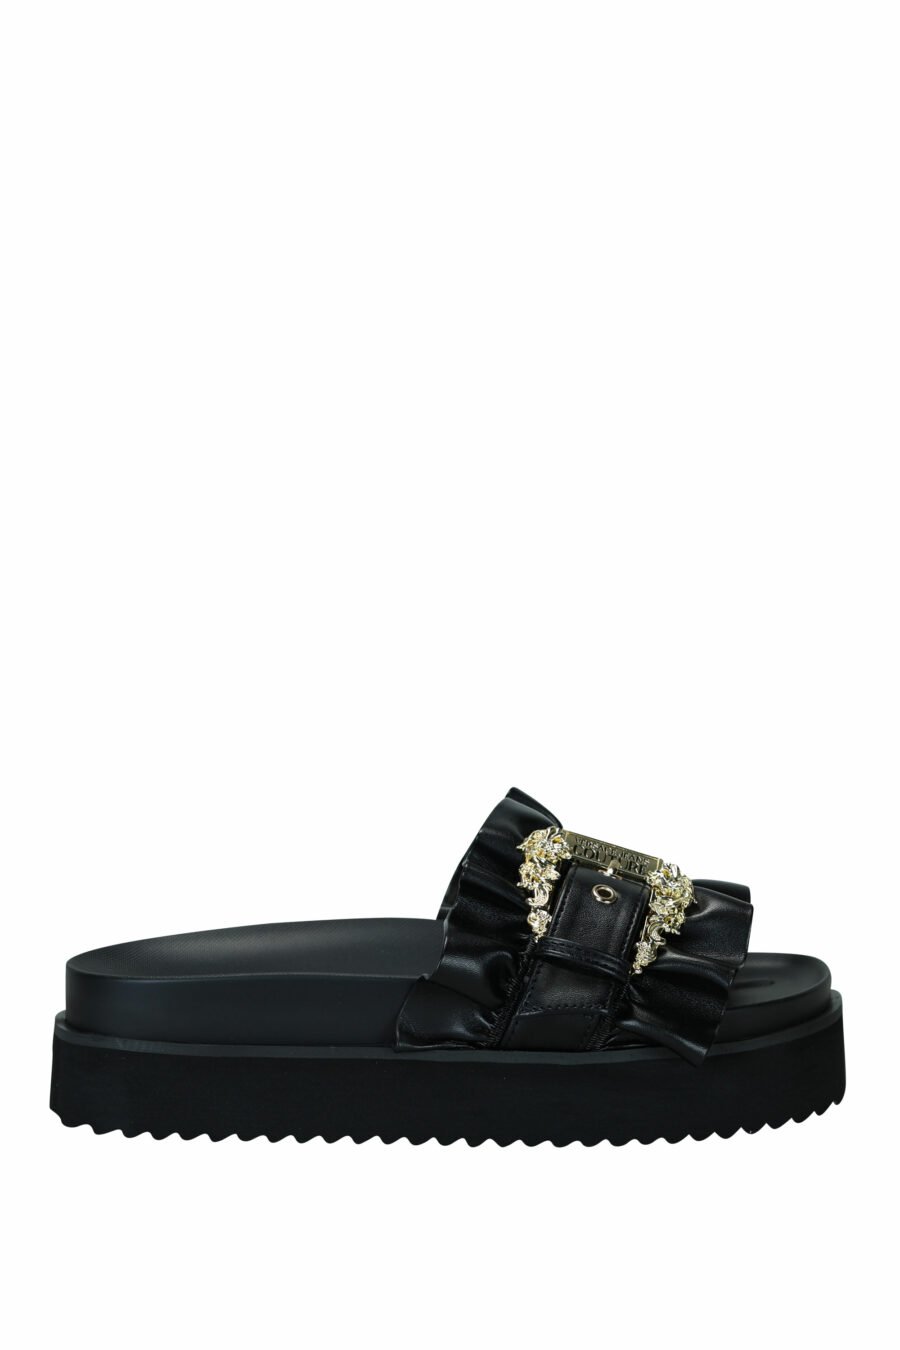 Sandalias negras con plataforma y hebilla barroca dorada - 8052019607192